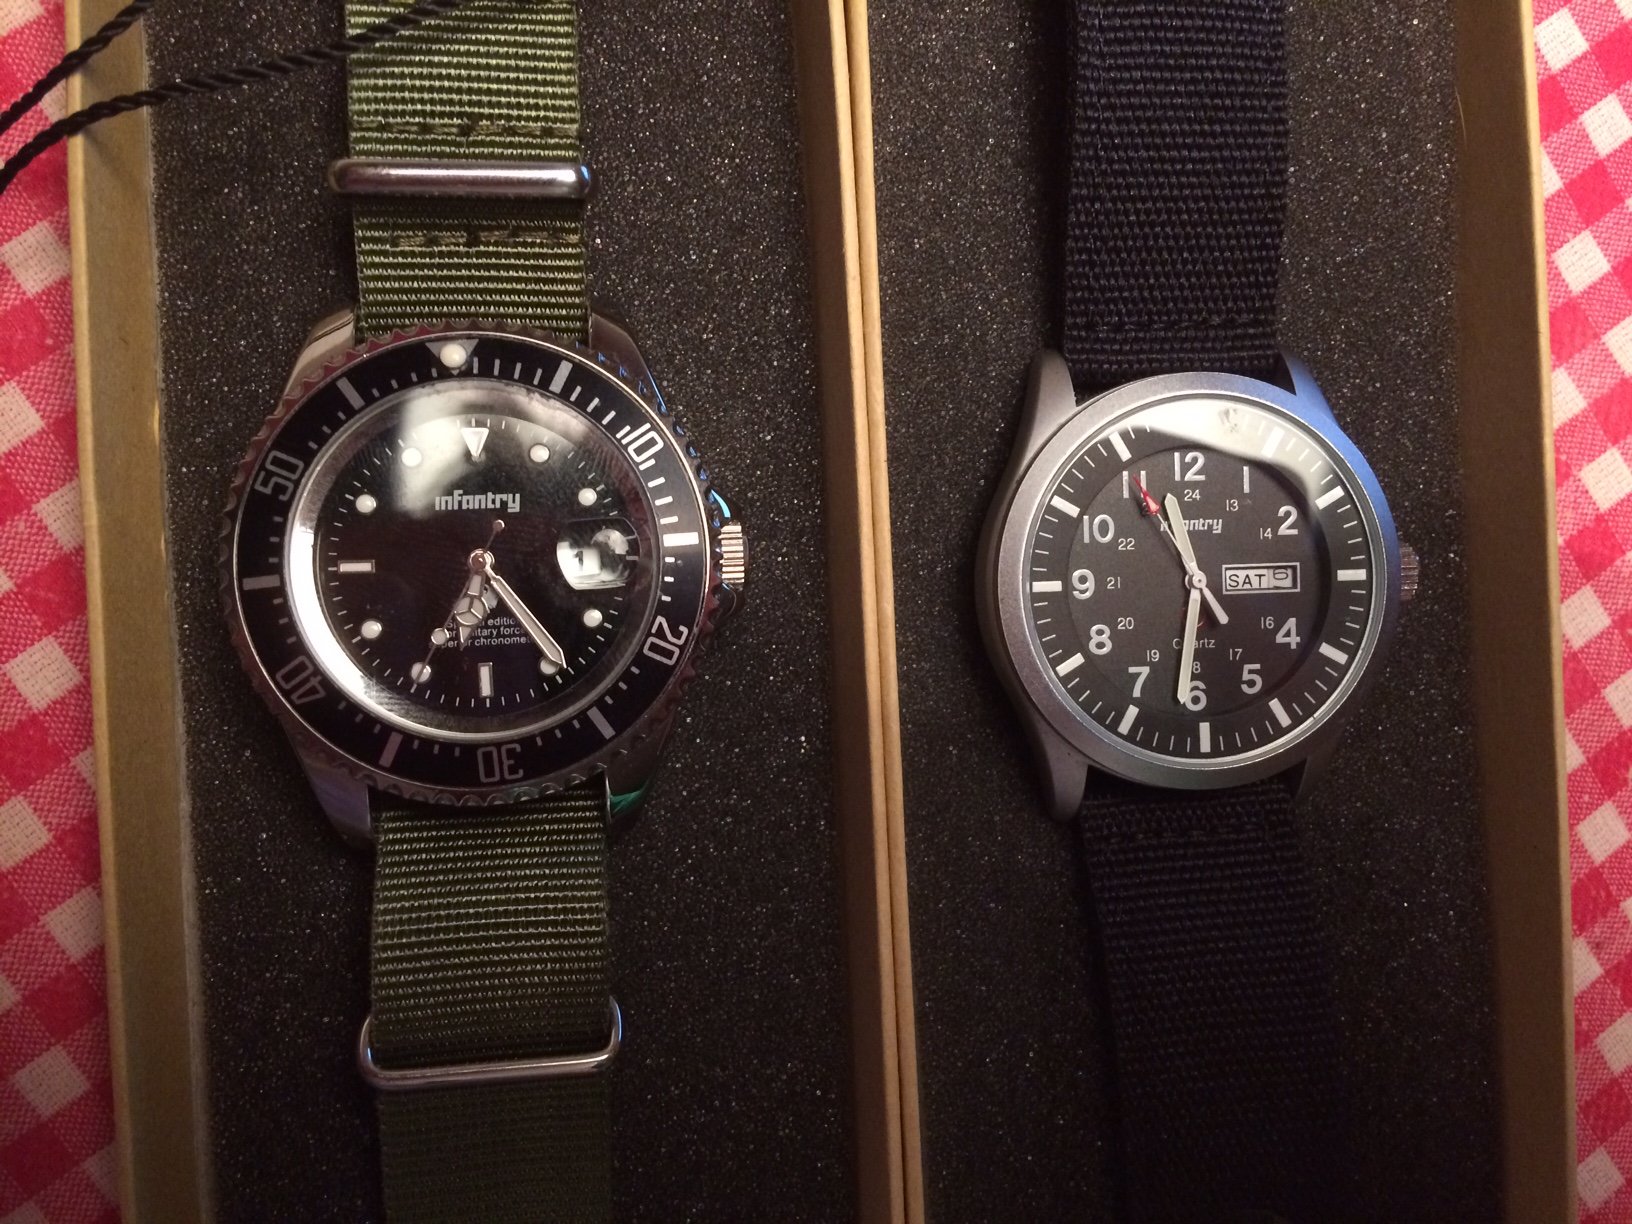 TK: Opruiming verschillende quartz horloges 10 tot 65 - Horlogemarkt (archief) - Horlogeforum.nl - forum voor liefhebbers van horloges